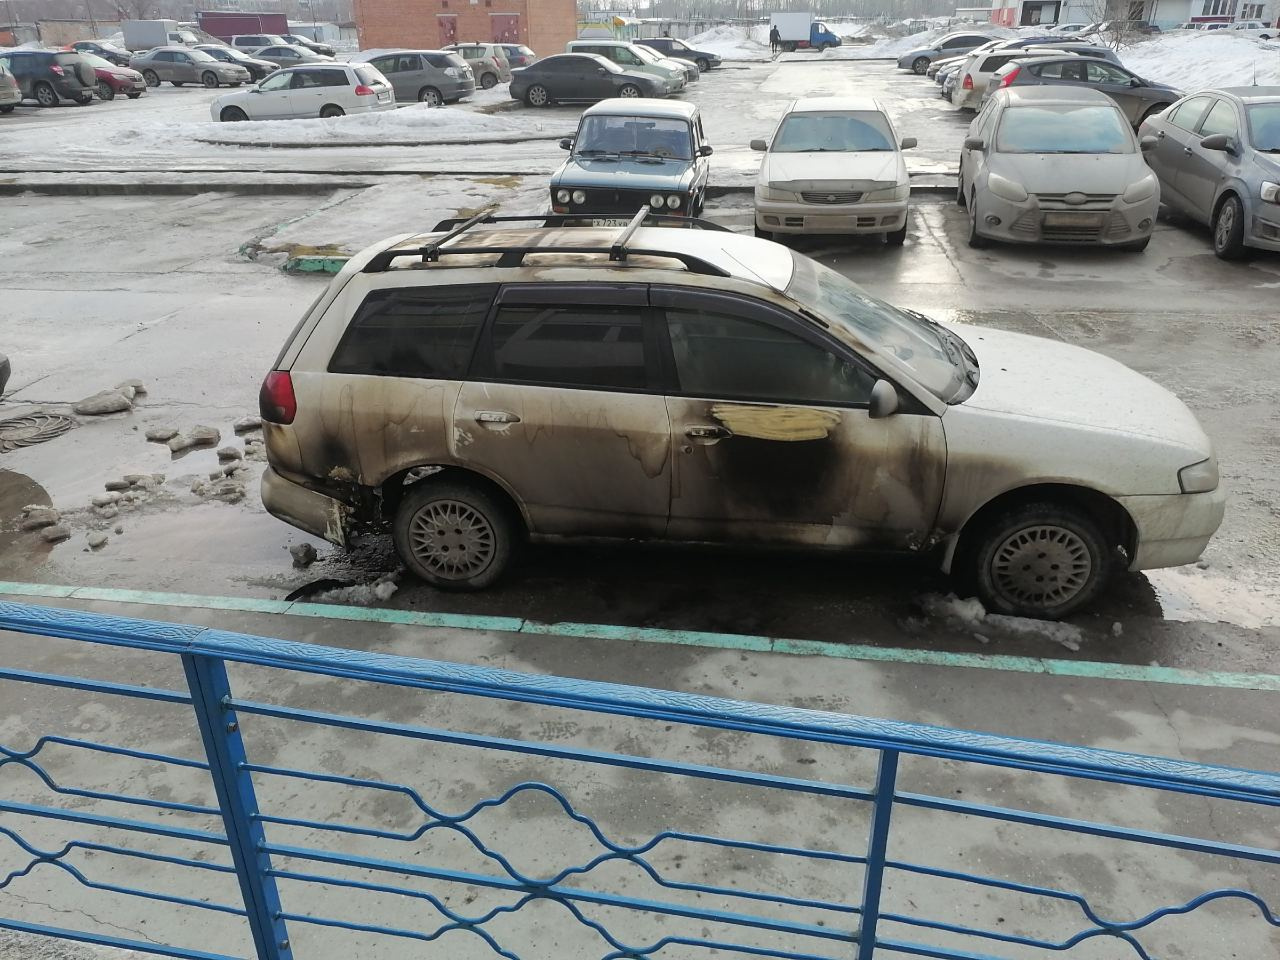 Неизвестный поджег белый Nissan и скрылся на Первомайке. Момент поджога попал на видео